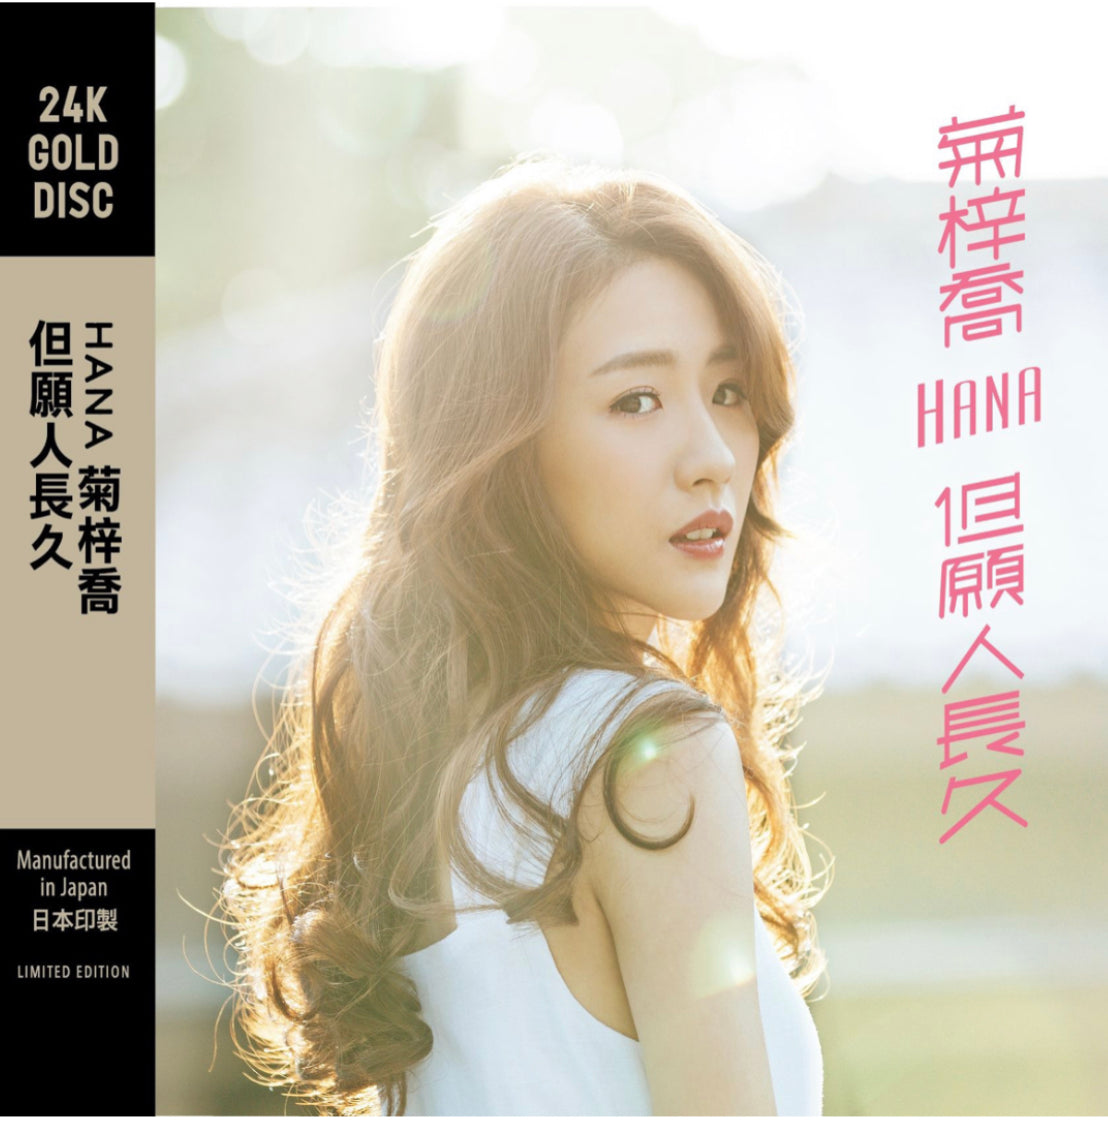 但願人長久 (24K GOLD CD)-菊梓喬 Hana Kuk